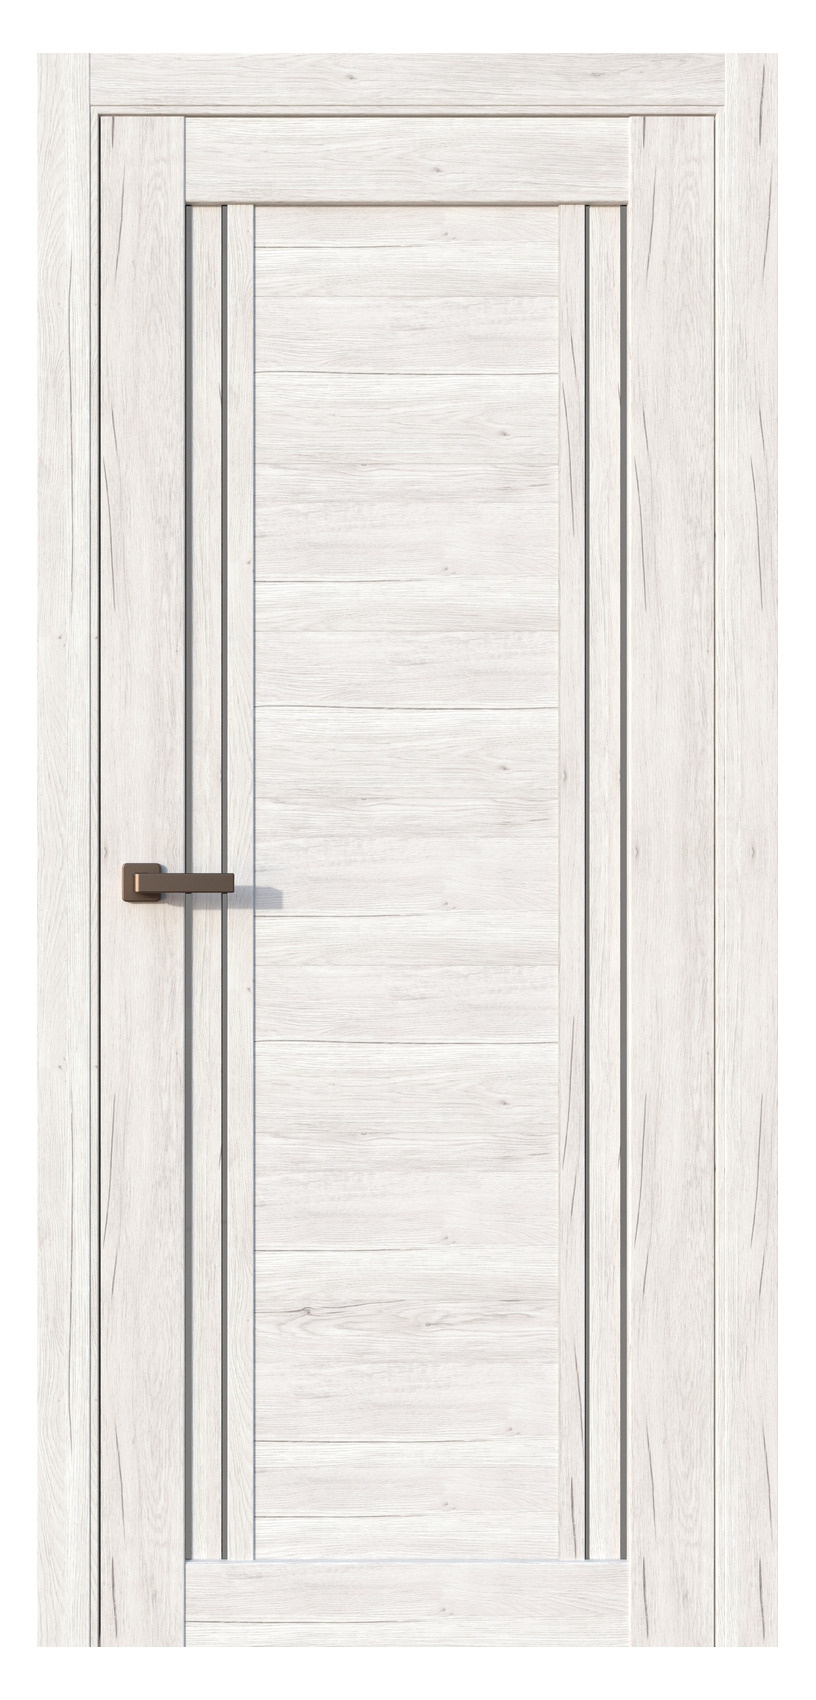 Questdoors Межкомнатная дверь QC4, арт. 17506 - фото №1